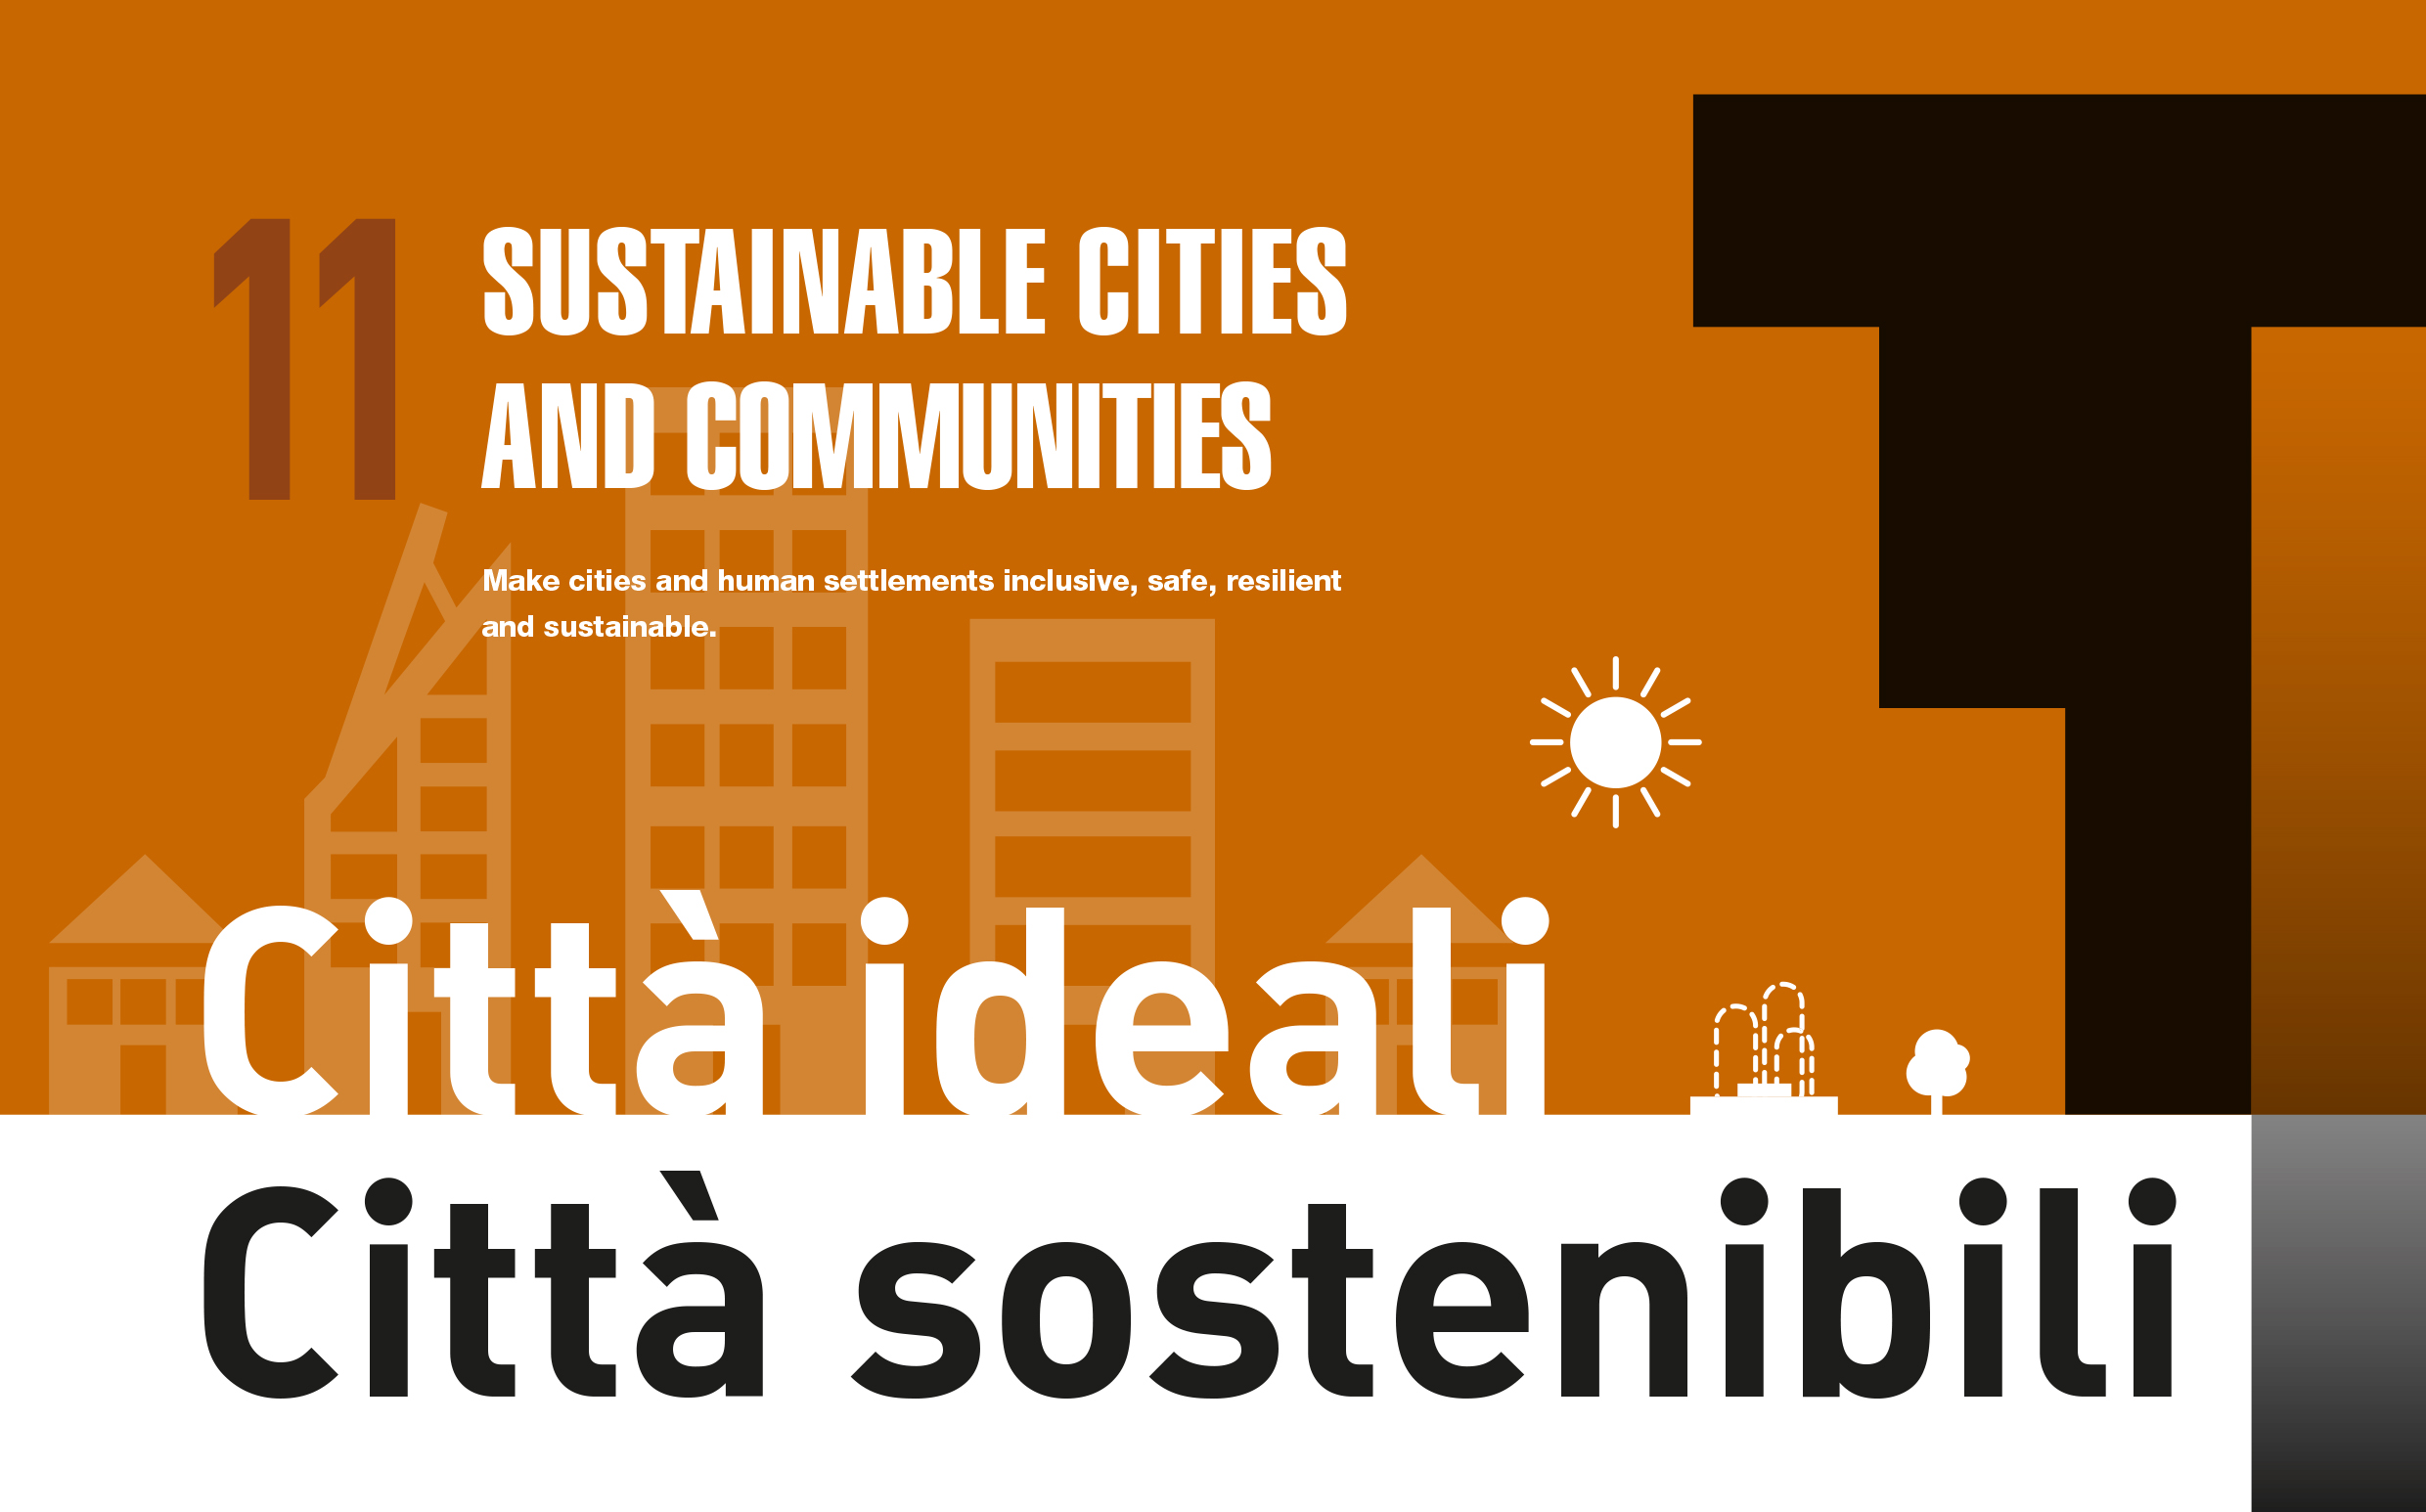 “Città ideali, città sostenibili”, torna il ciclo di appuntamenti promosso dal Museo delle Terre Nuove e dal Comune di San Giovanni Valdarno